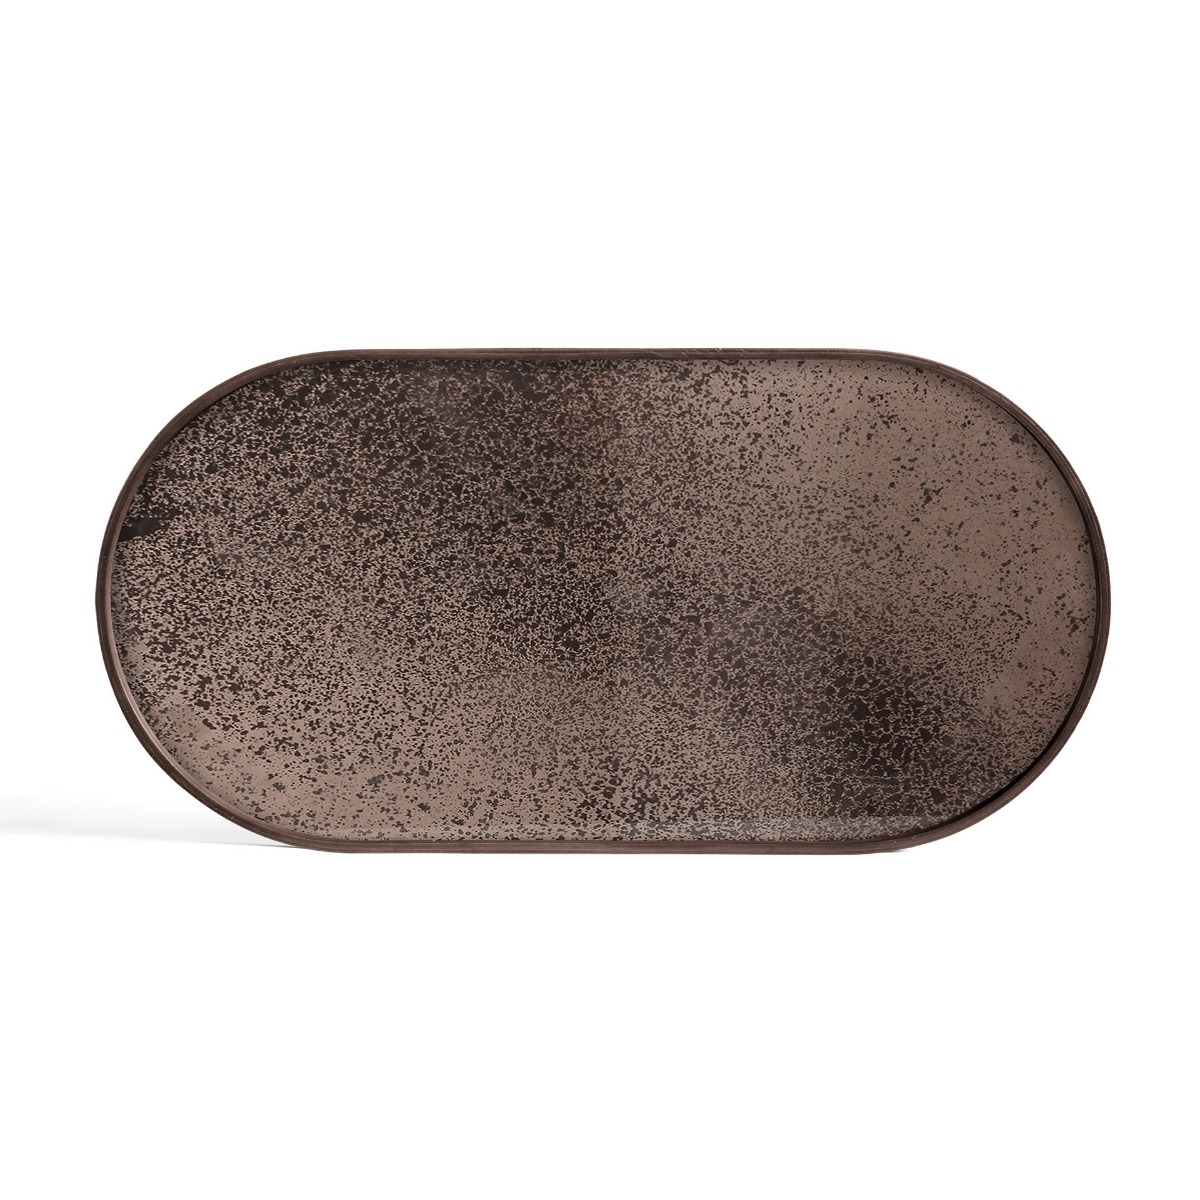 Bronze mirror tray oblong medium